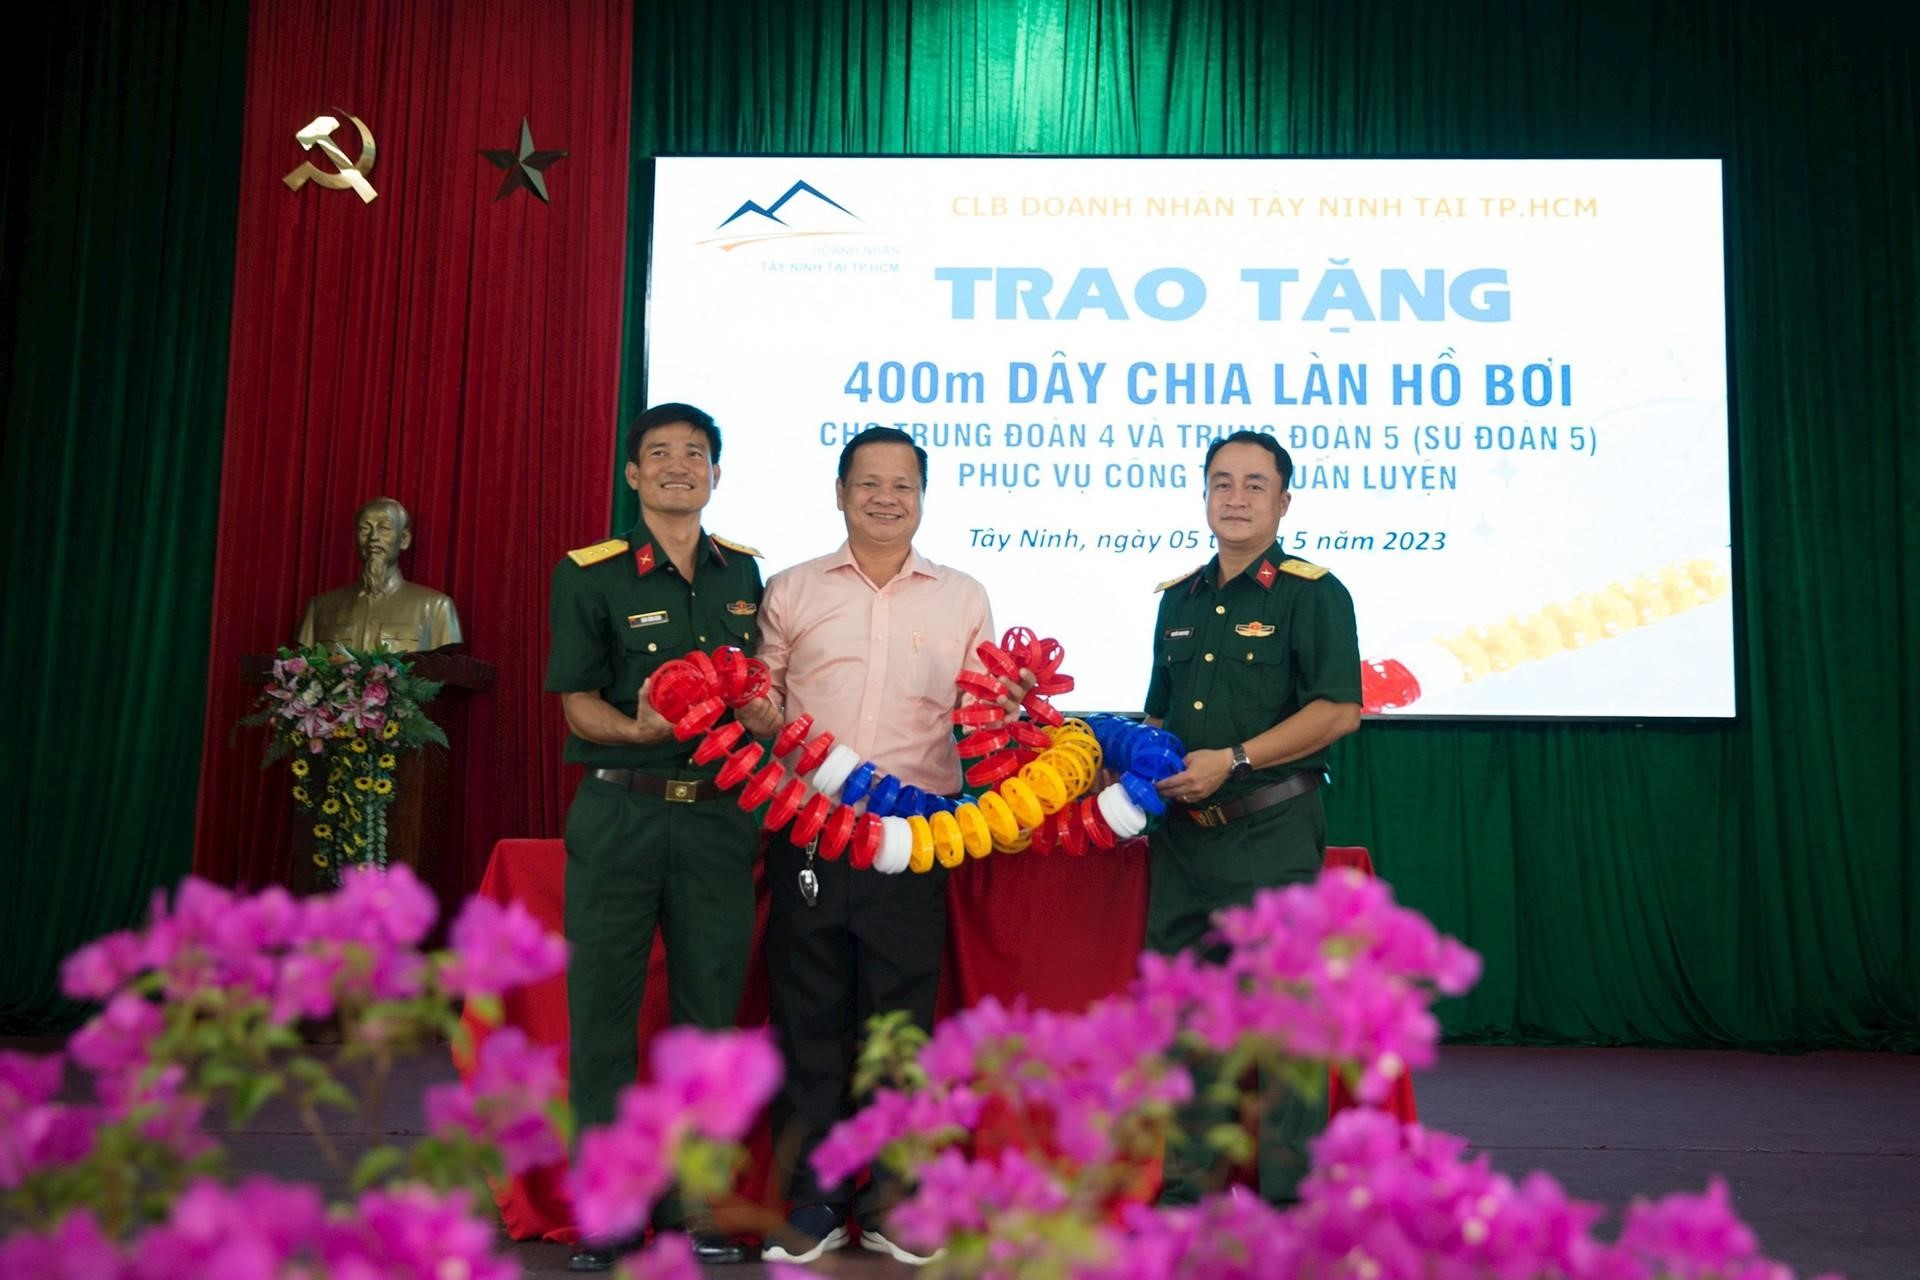 Ông Nguyễn Văn Mừng (giữa) – Phó chủ tịch CLB “Doanh nhân Tây Ninh tại TP.HCM” trao tượng trưng phao bơi cho lãnh đạo Sư đoàn 5